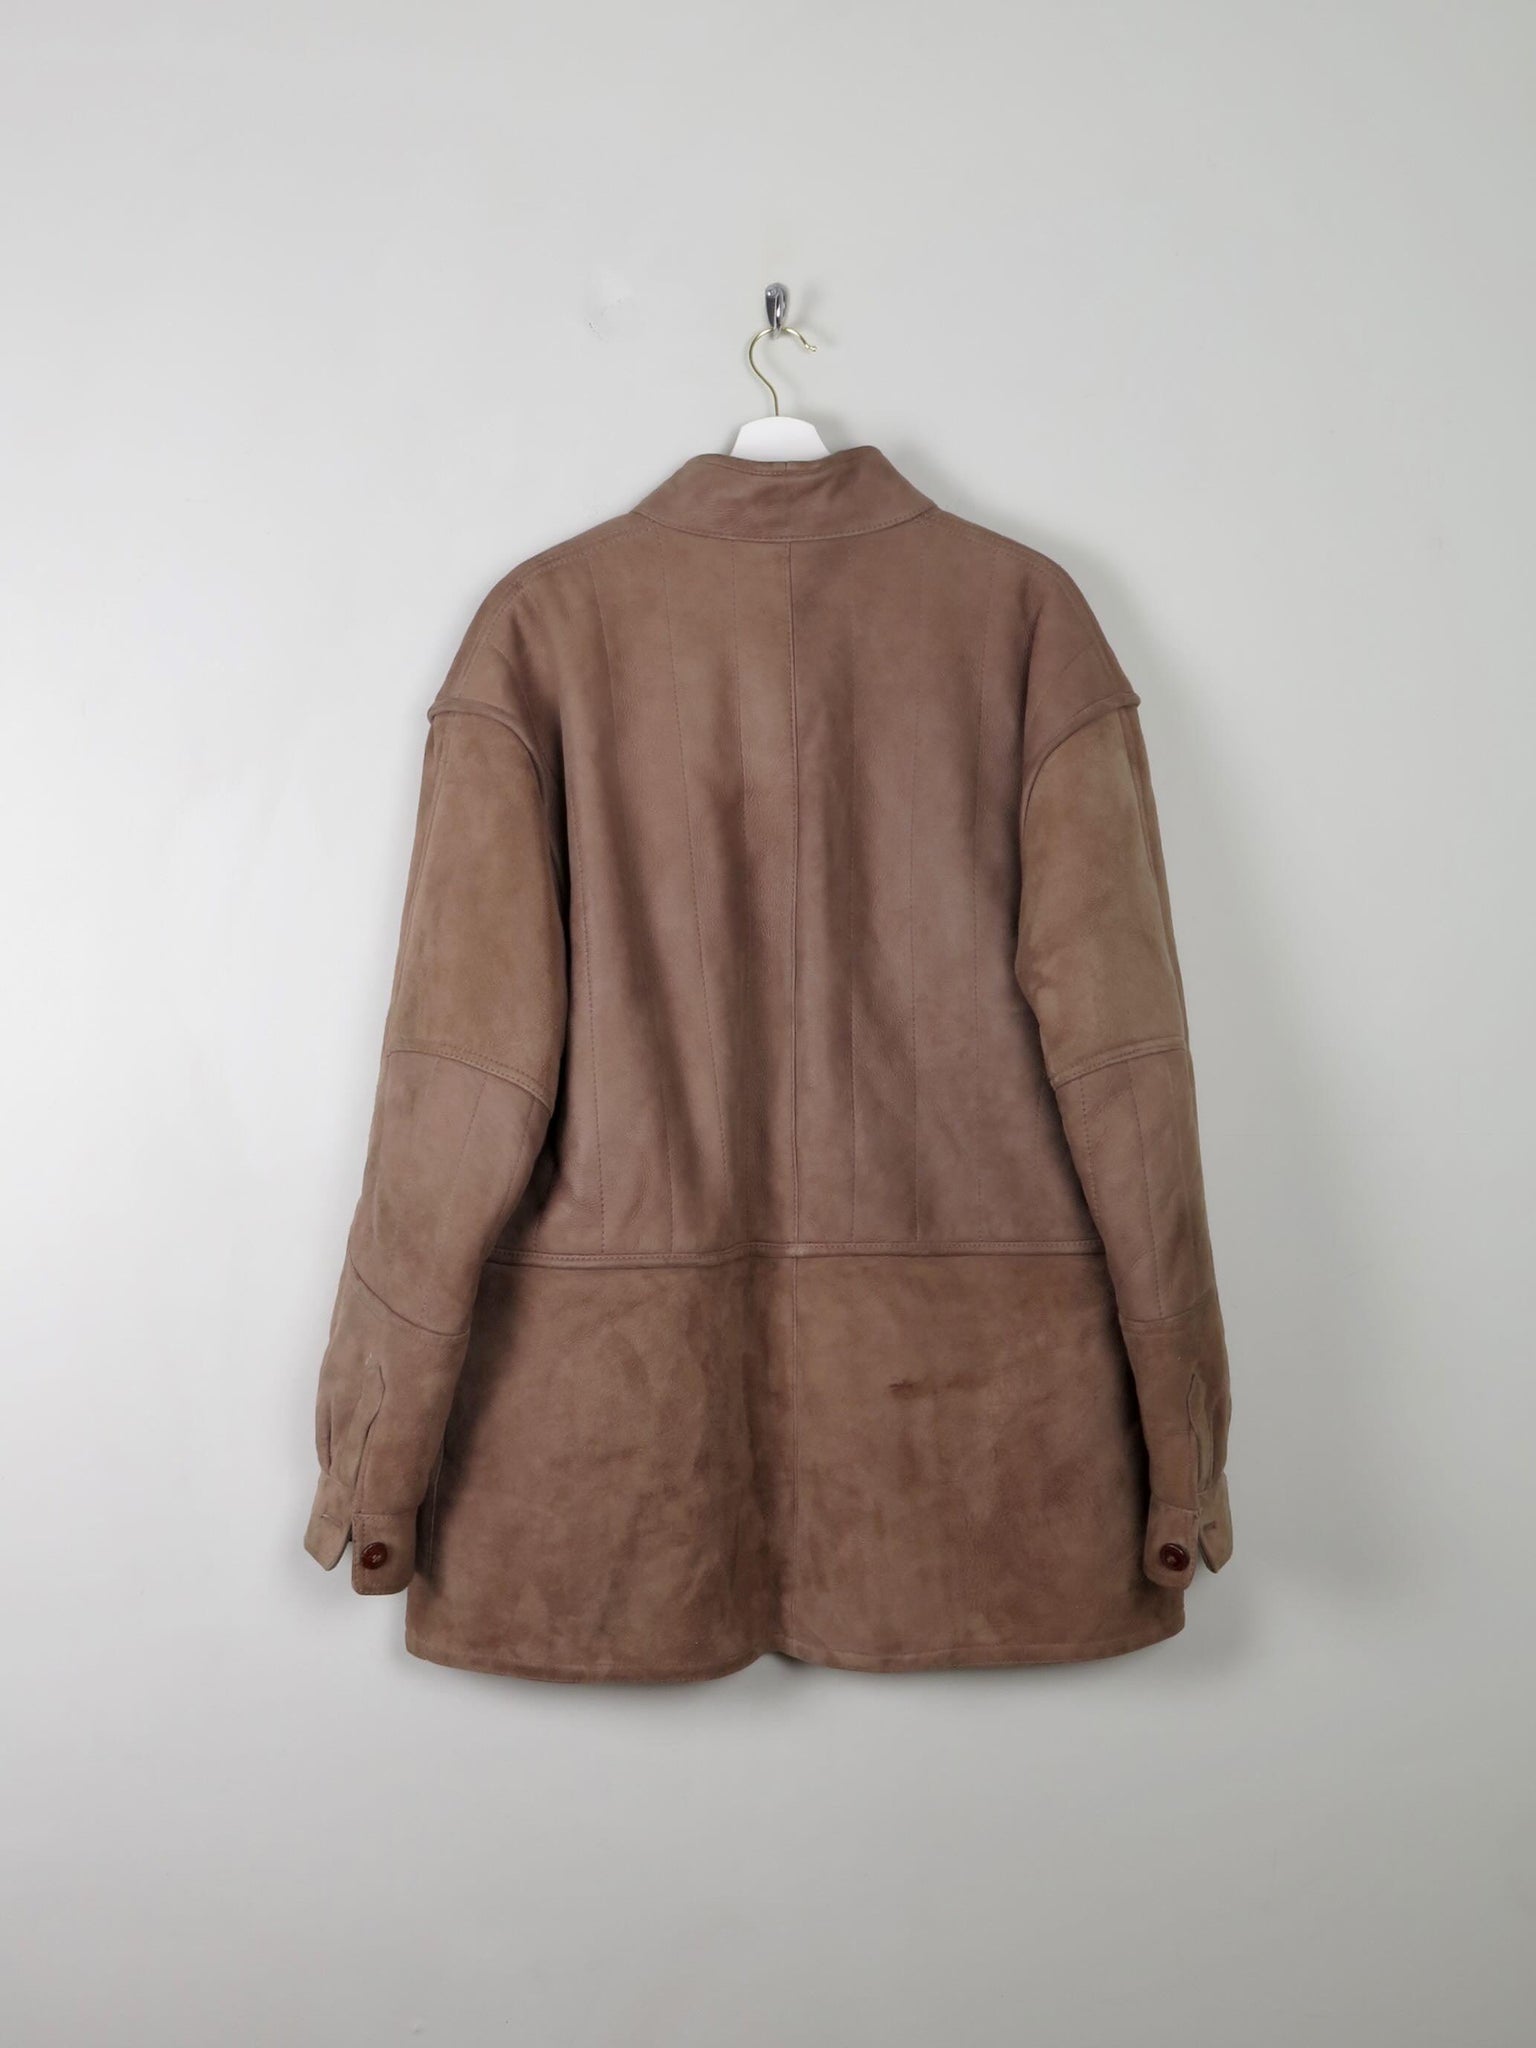 Men's Vintage Sheepskin Jacket L/XL - The Harlequin